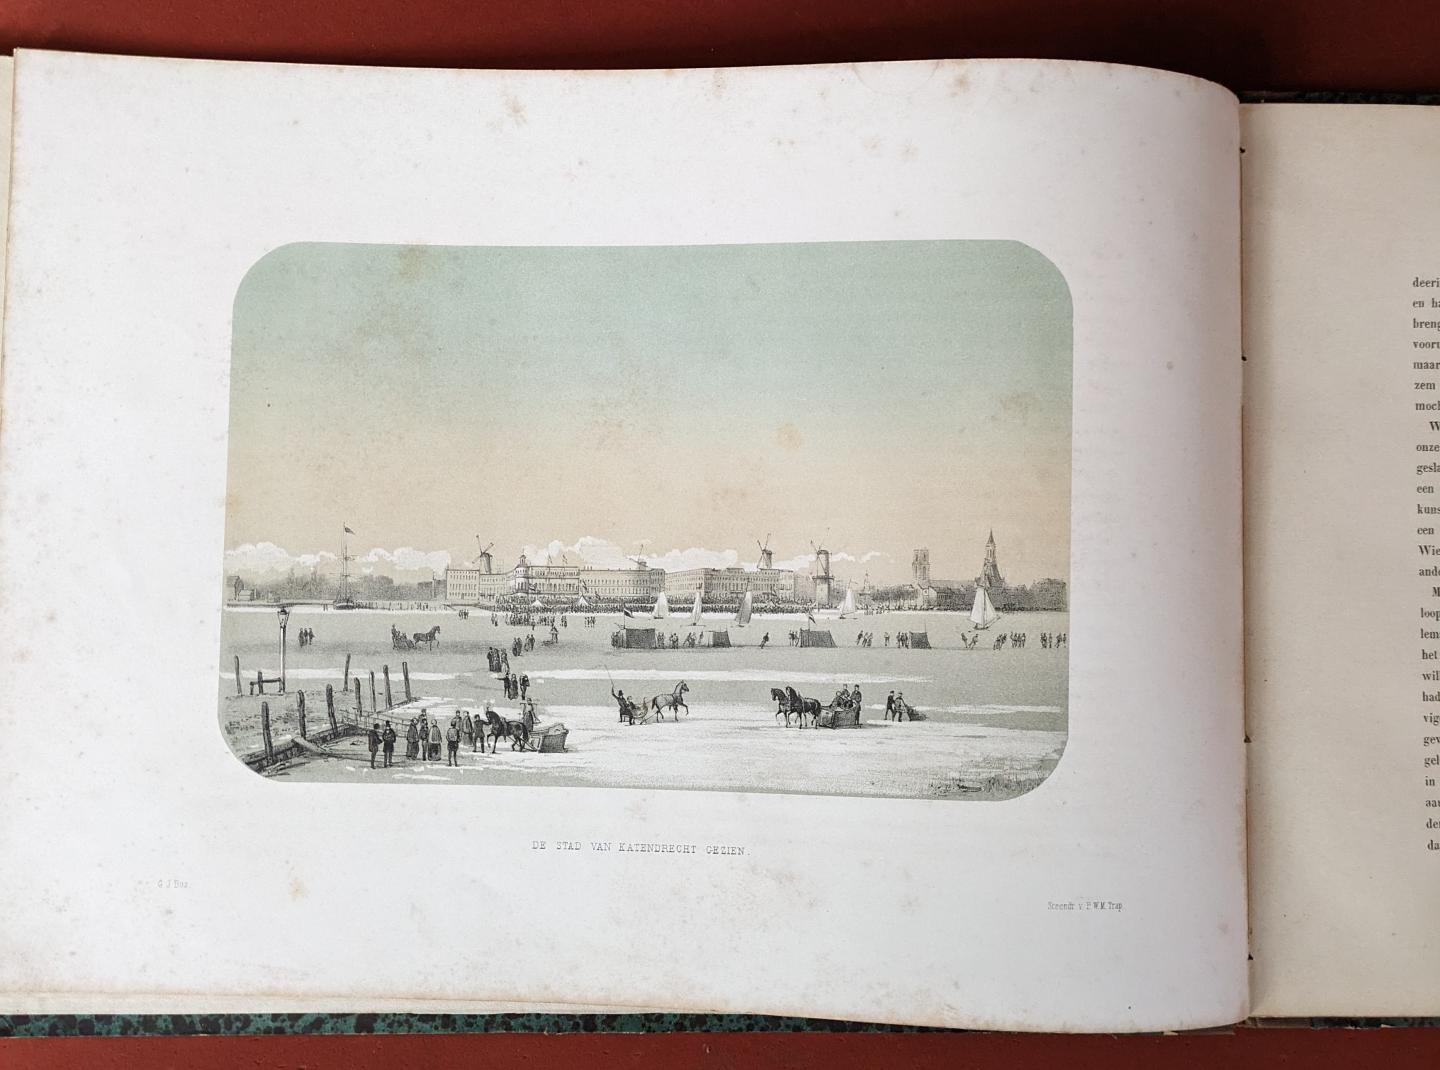 Reyn, G. van; e.a. - IJsvermaak op de Maas te Rotterdam in februari 1855, met bijschriften